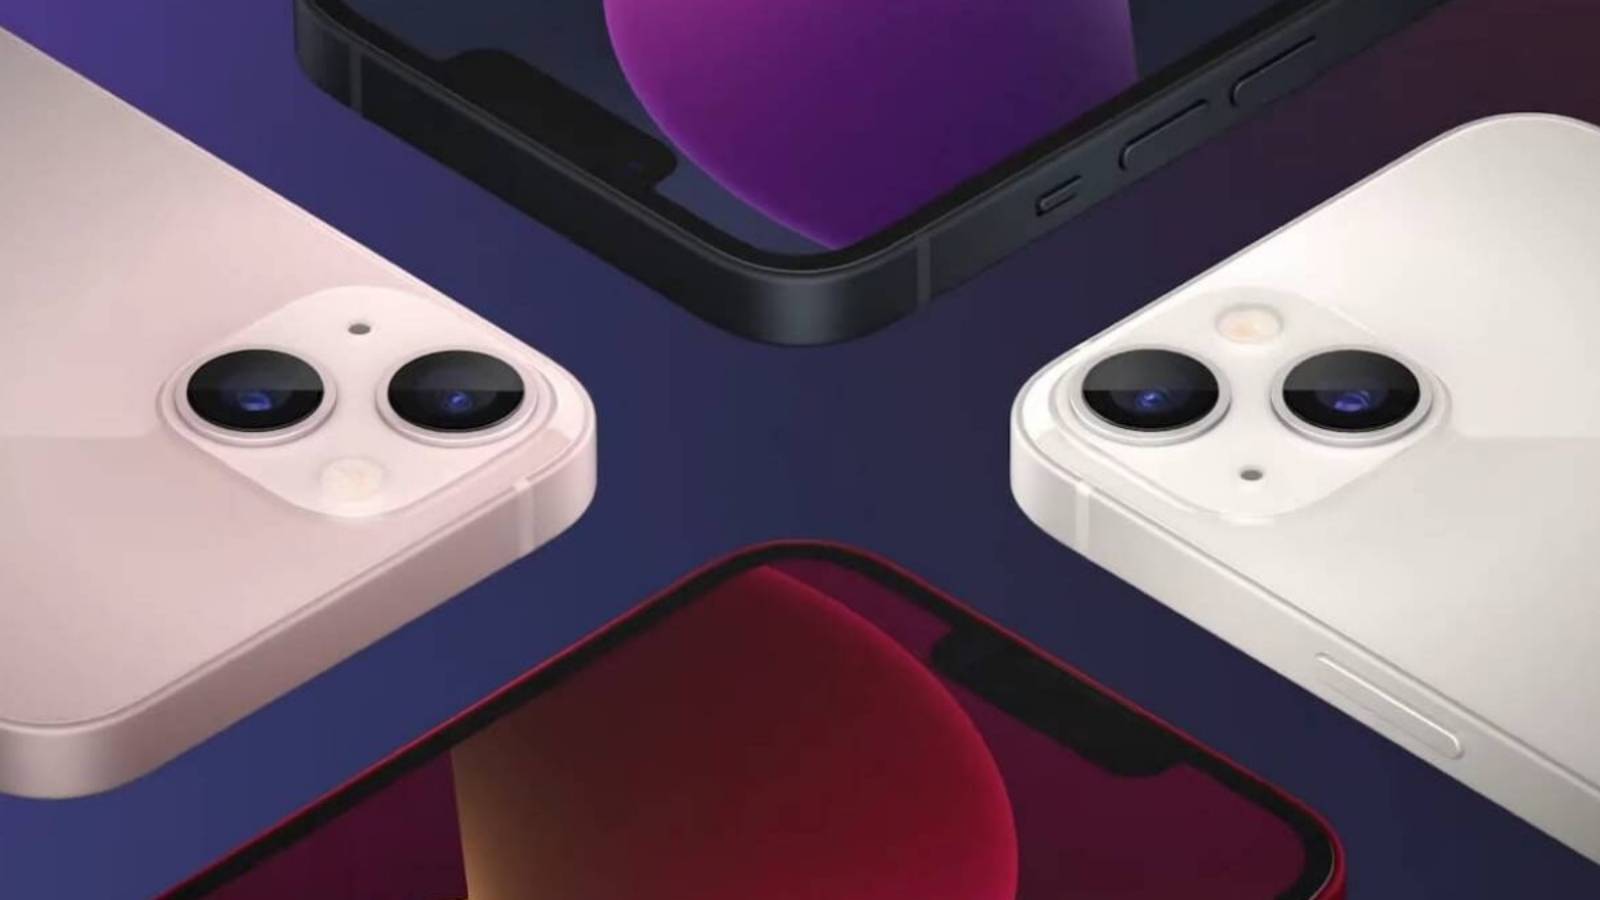 Apple confirma a sus socios la disminución de la demanda de la serie iPhone 13